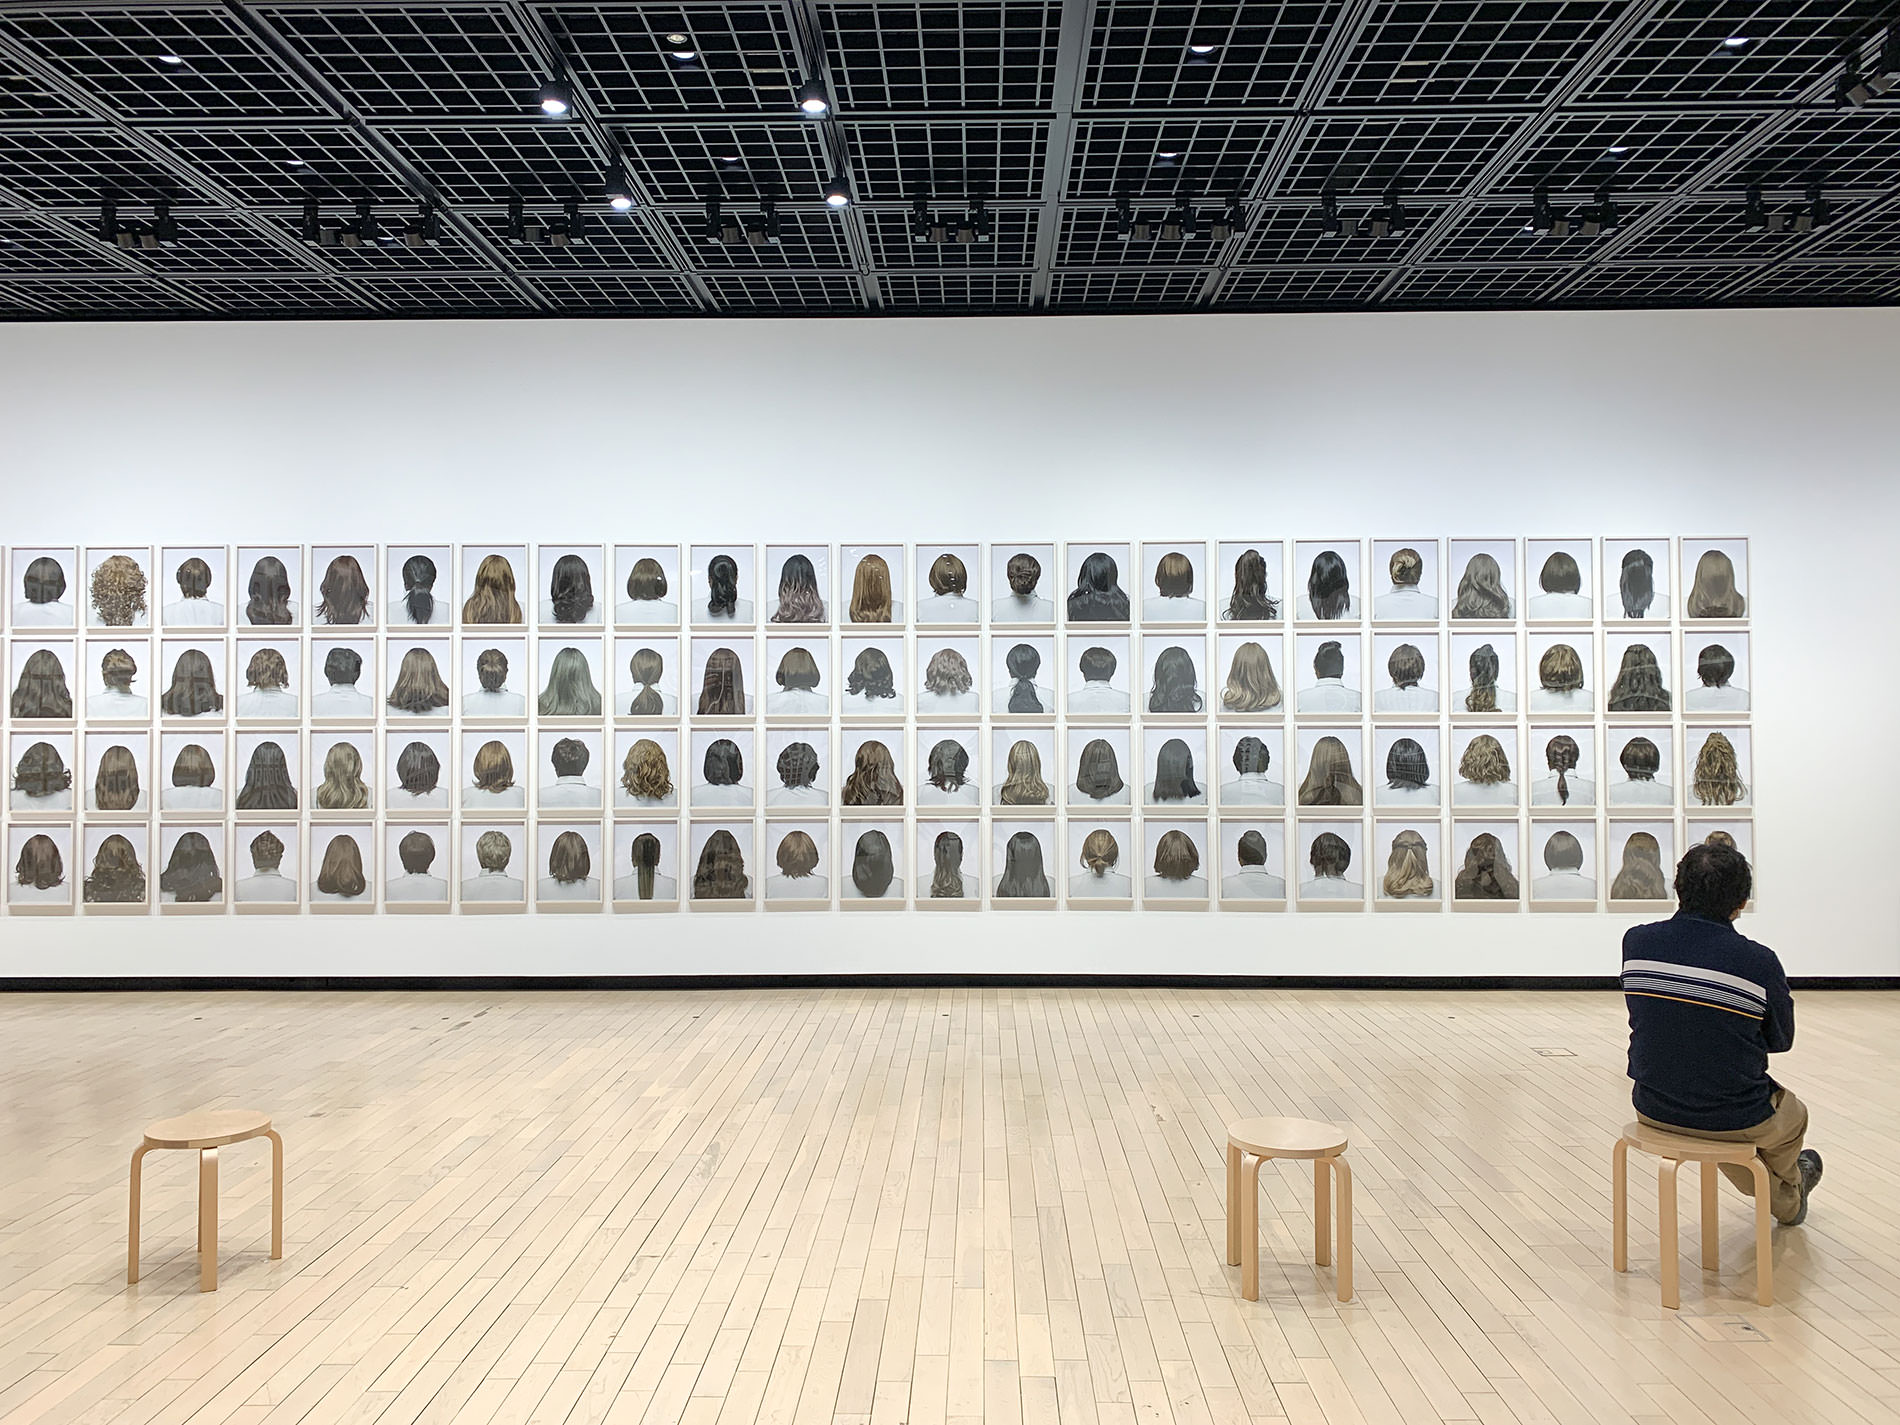 澤田知子「狐の嫁いり」展 / Tokomo Sawada's Exhibition KITUNE NO YOMEIRI in TOKYO PHOTOGRAPHIC ART MUSEUM 2021